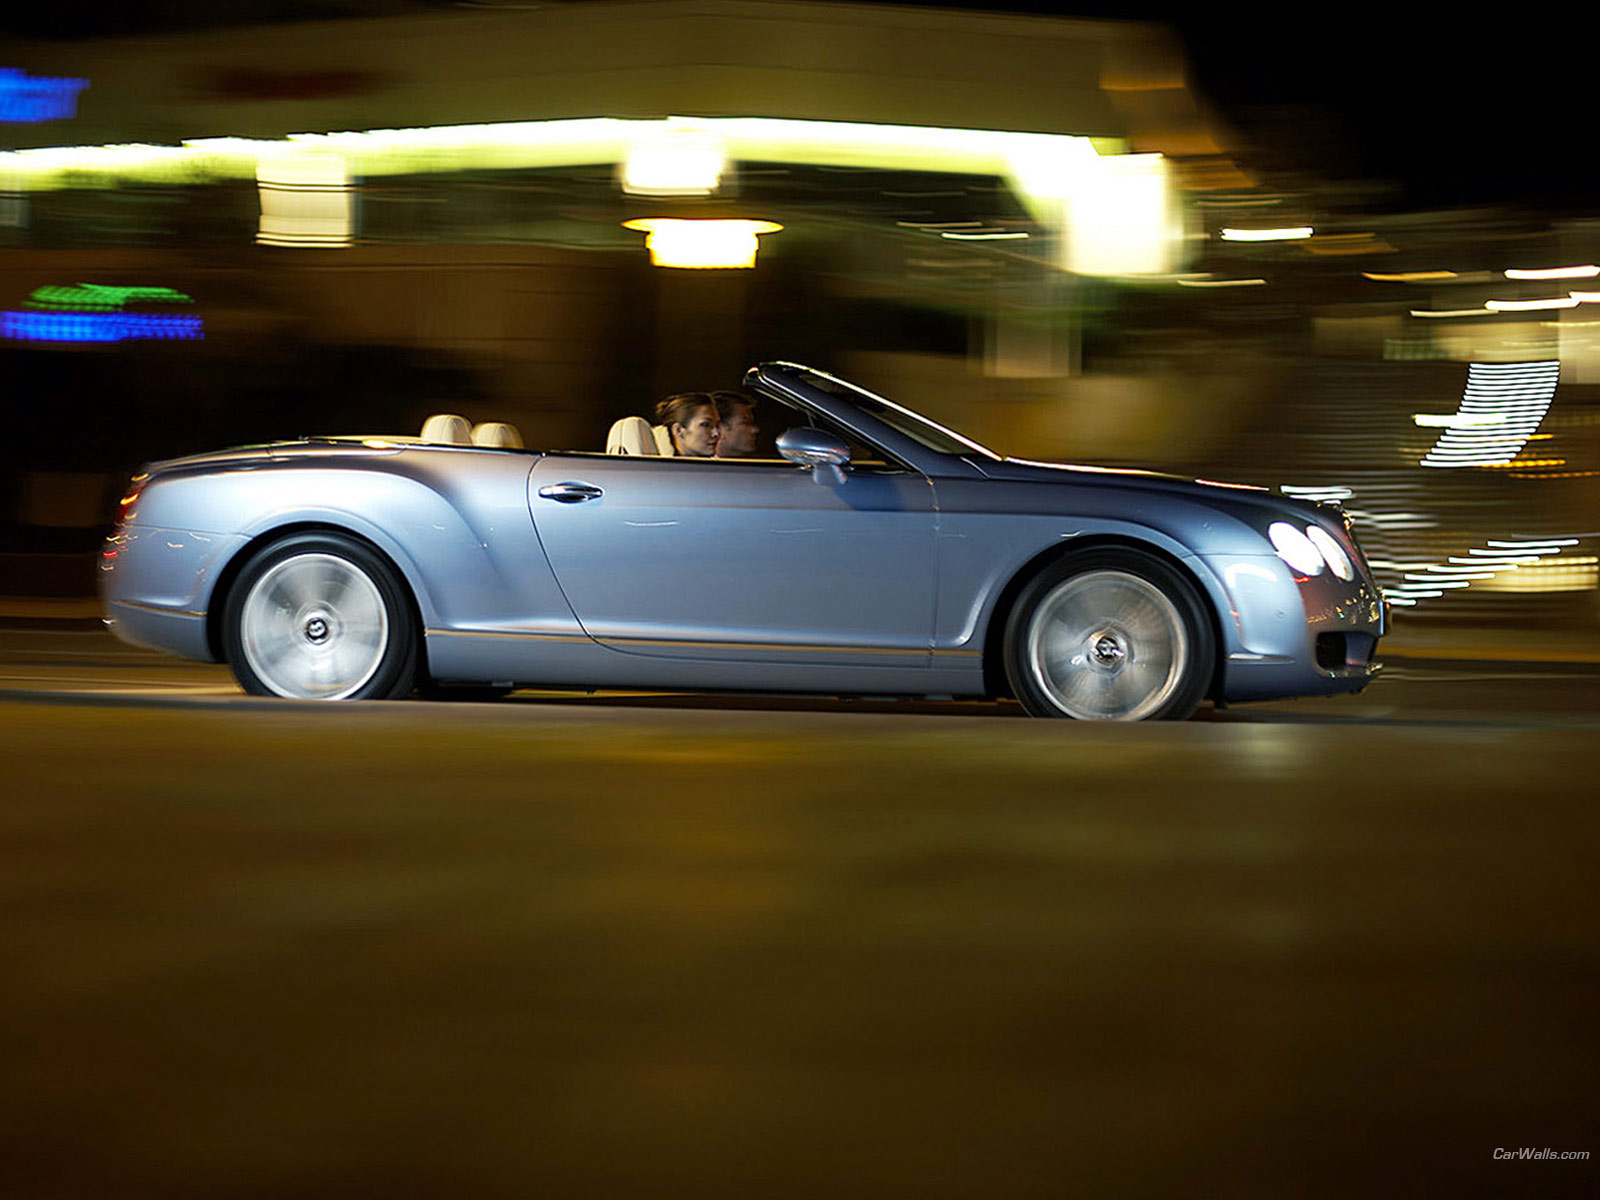 바탕화면용 배경사진 벤틀리 컨티넨탈 GTS (Bentley Continental GTC)